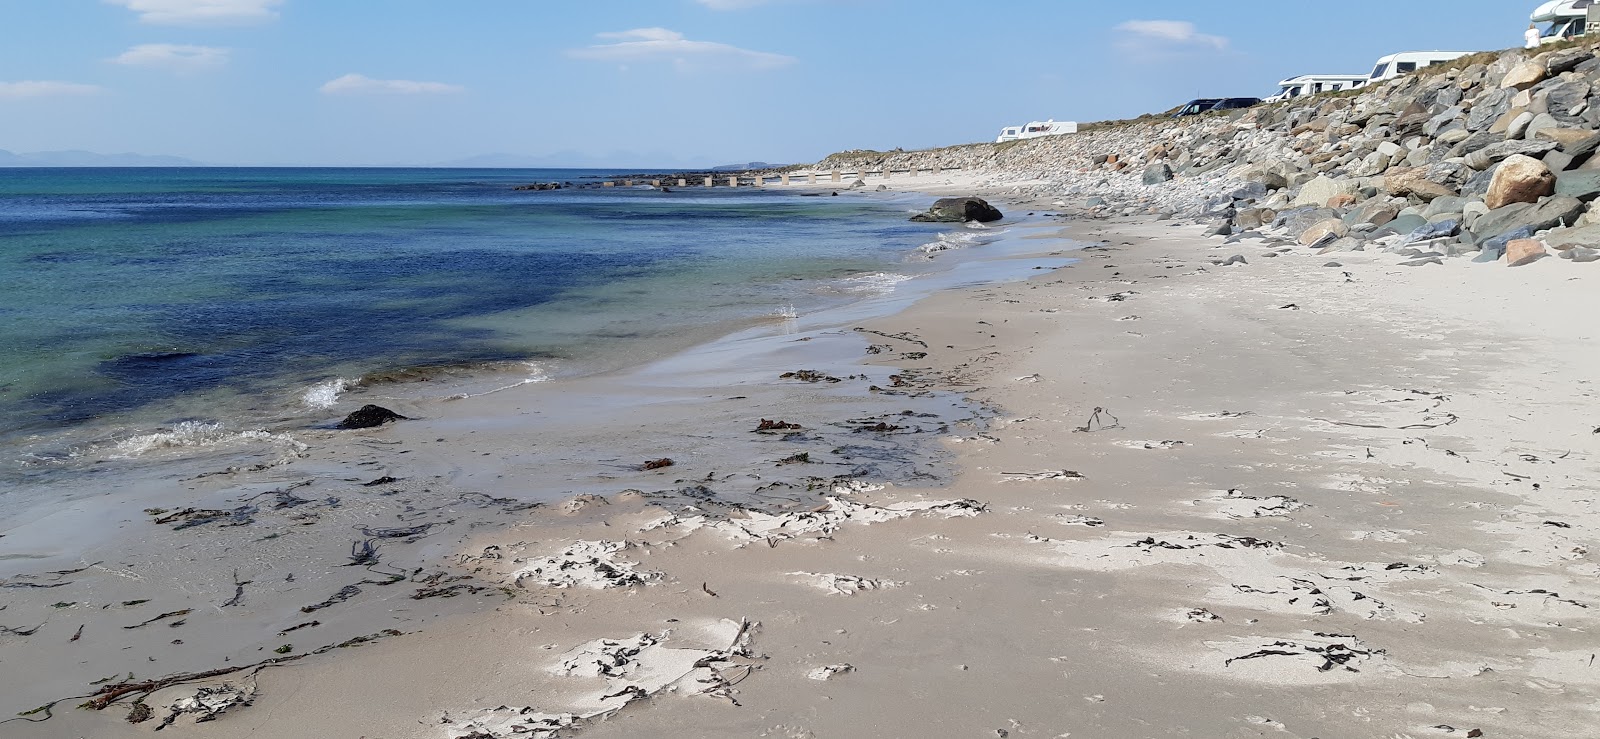 Photo de Killegruer Beach - endroit populaire parmi les connaisseurs de la détente